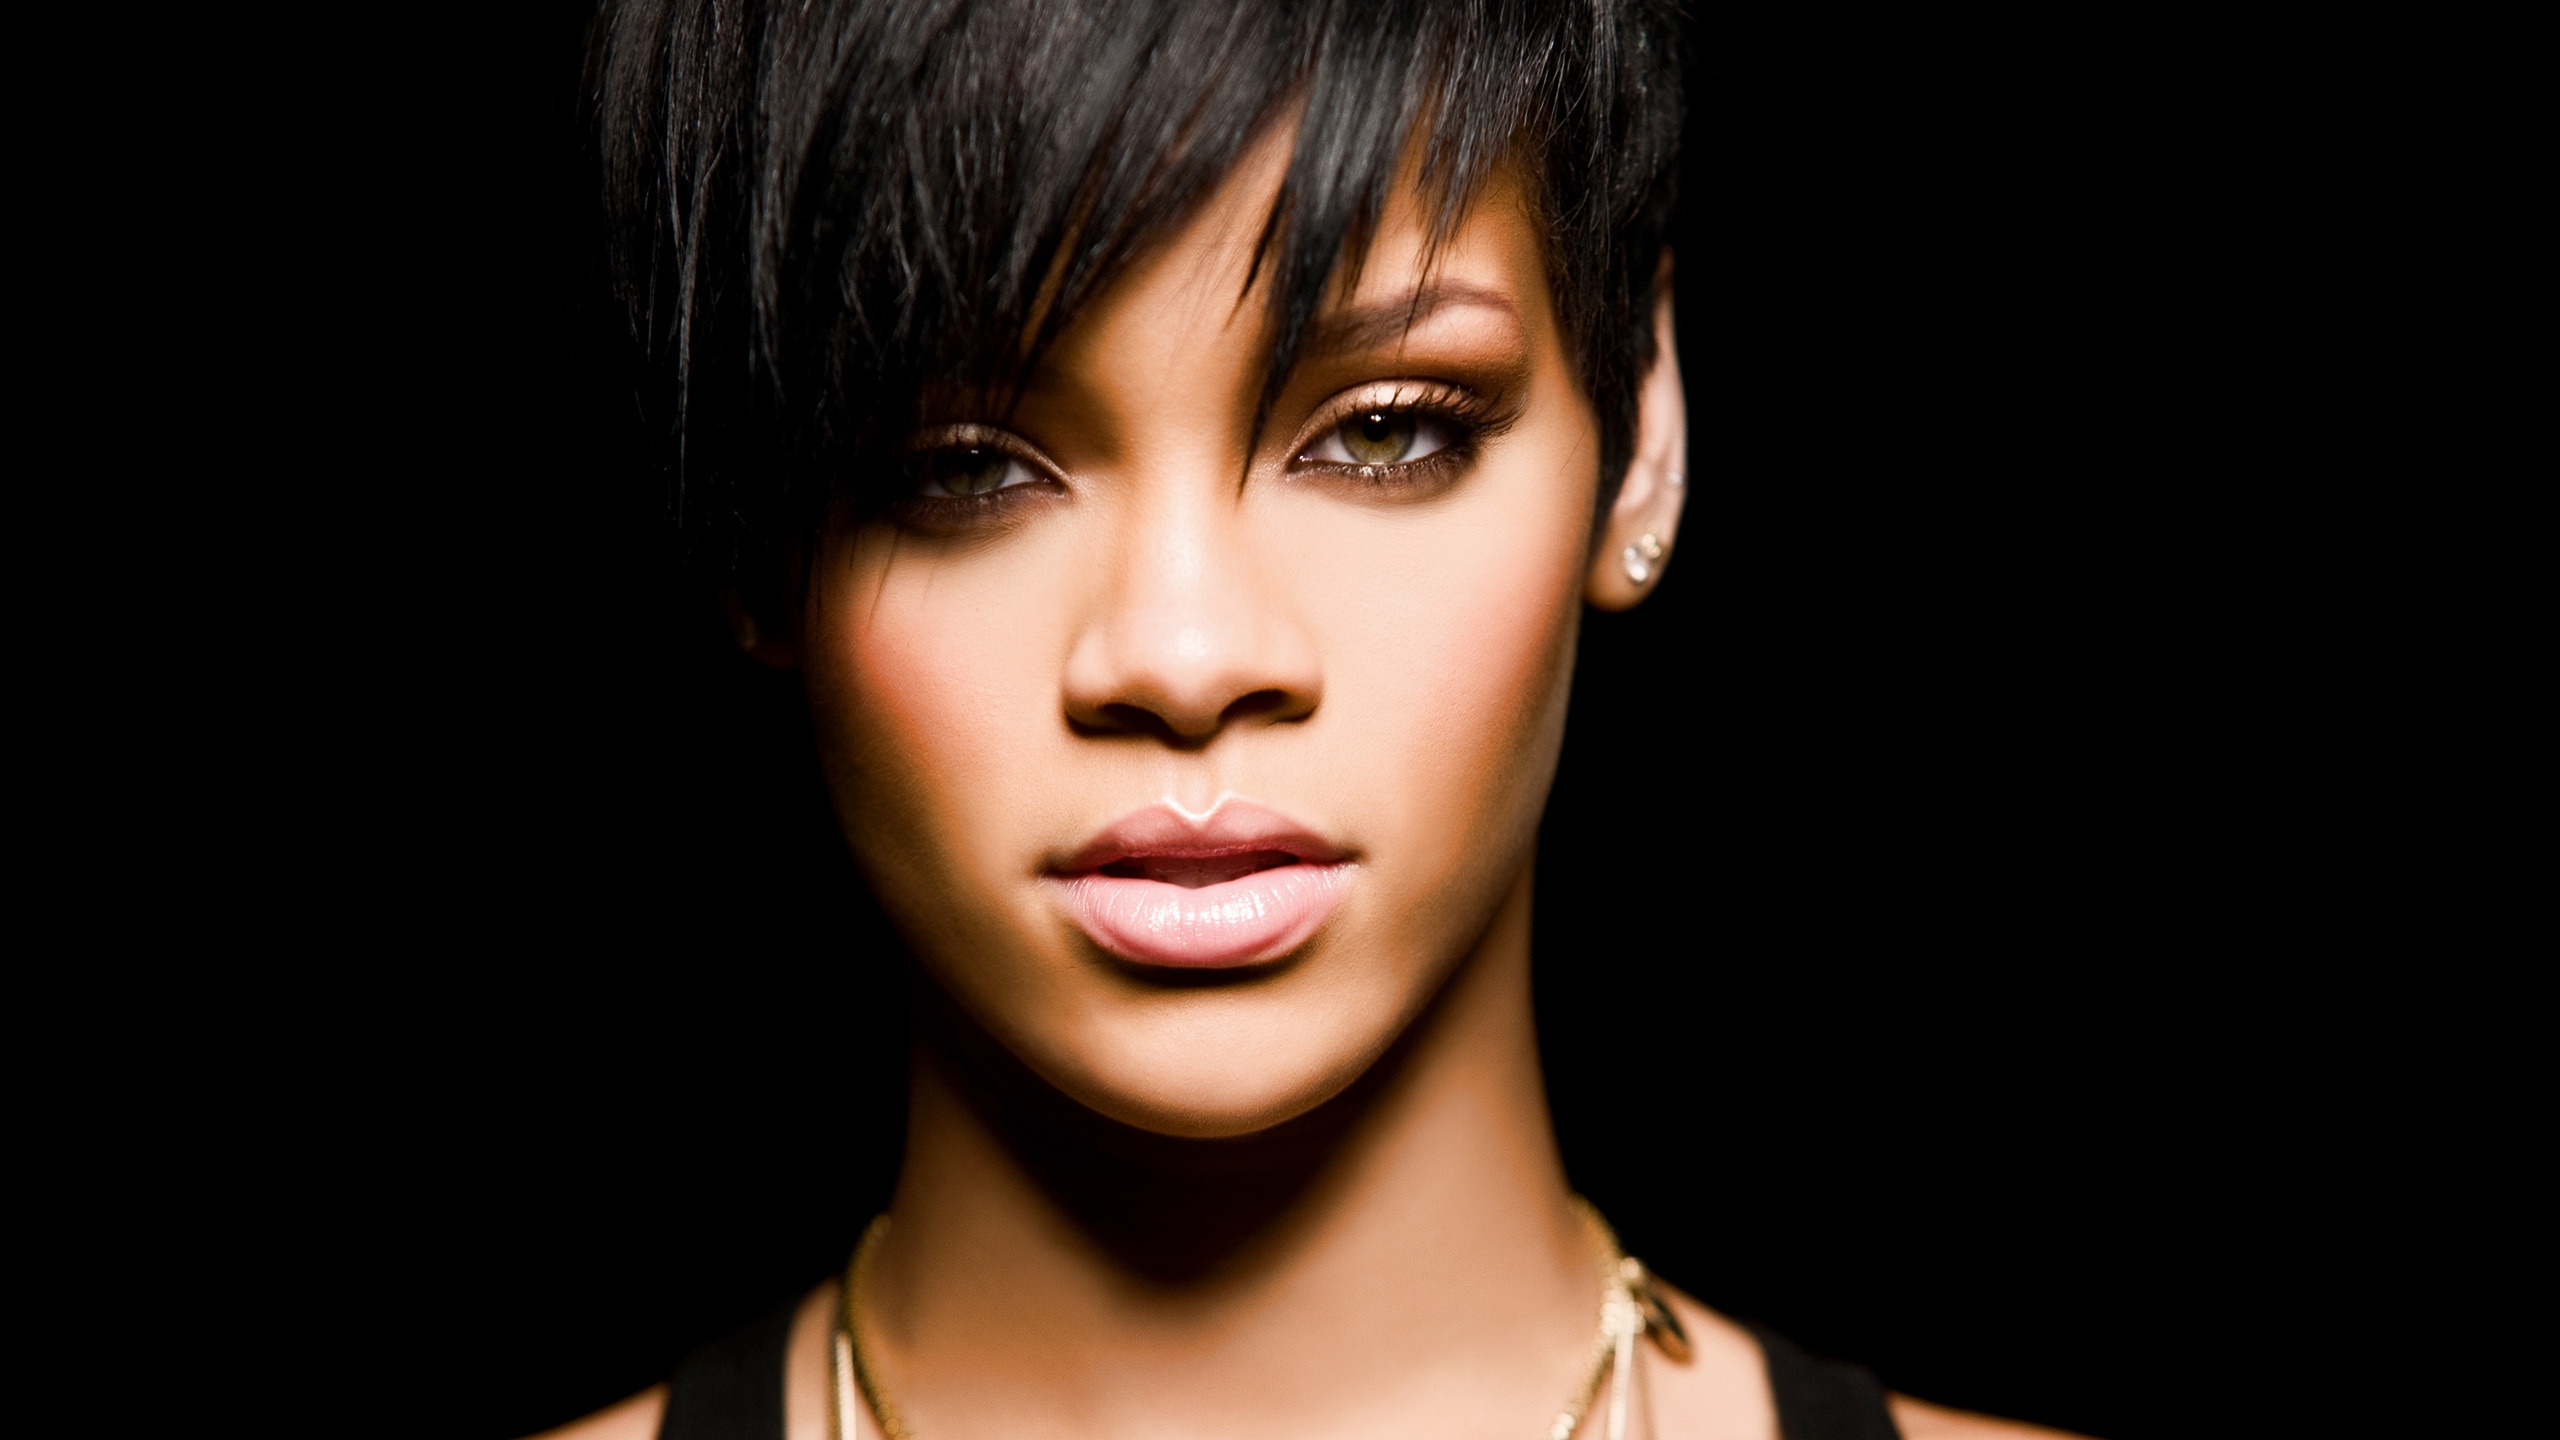 Rihanna for 2560x1440 HDTV resolution